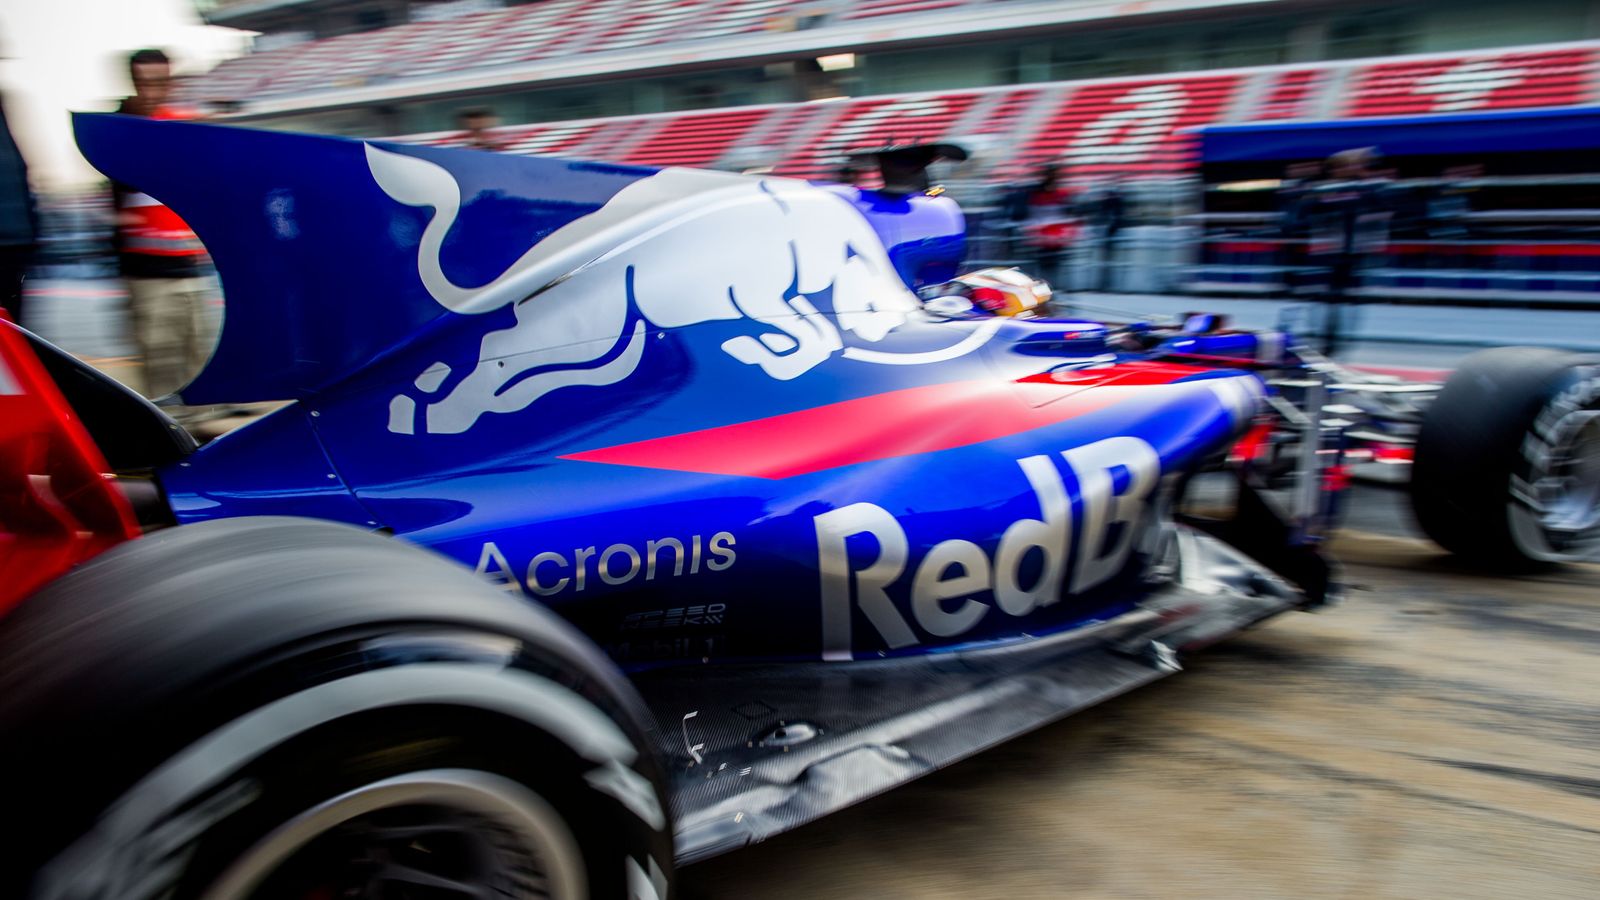 Shark fins spoil 2017 F1 car designs, says Red Bull's Christian Horner ...